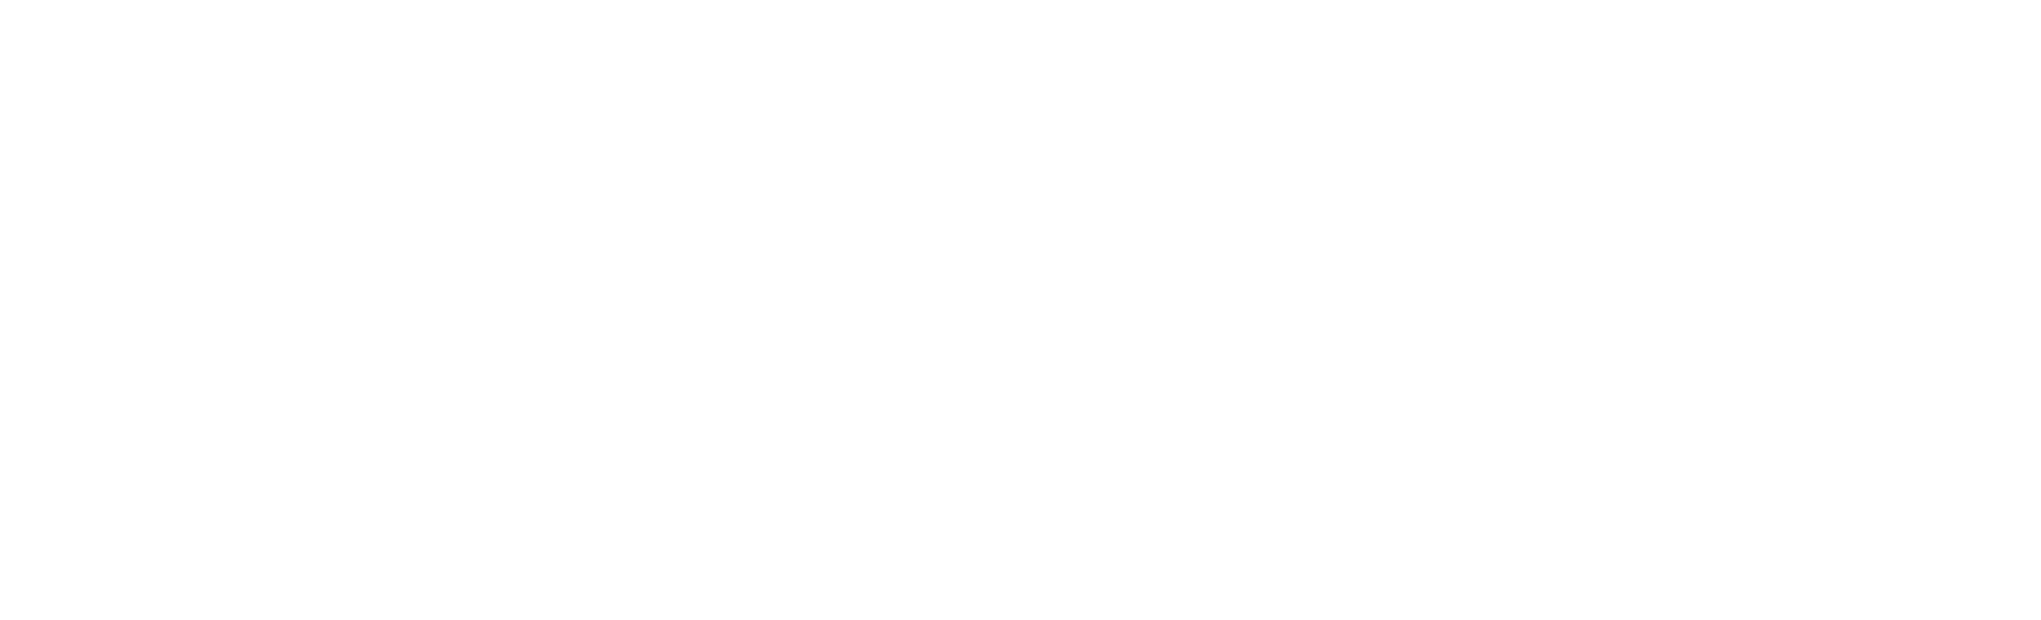 kinloch-court-court-logo-white